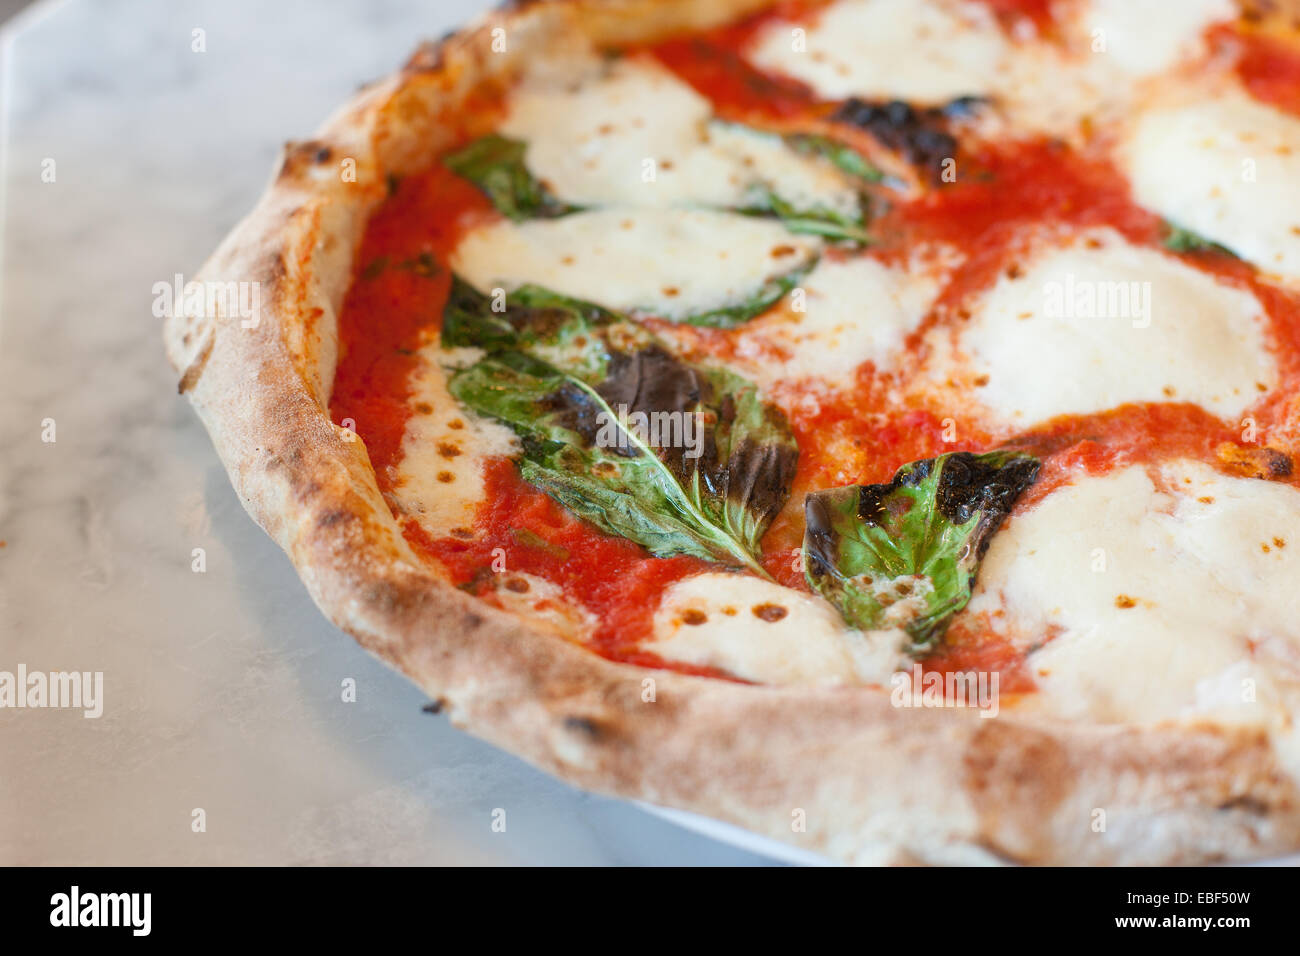 Primer plano de una pizza margherita en mostrador de mármol Foto de stock